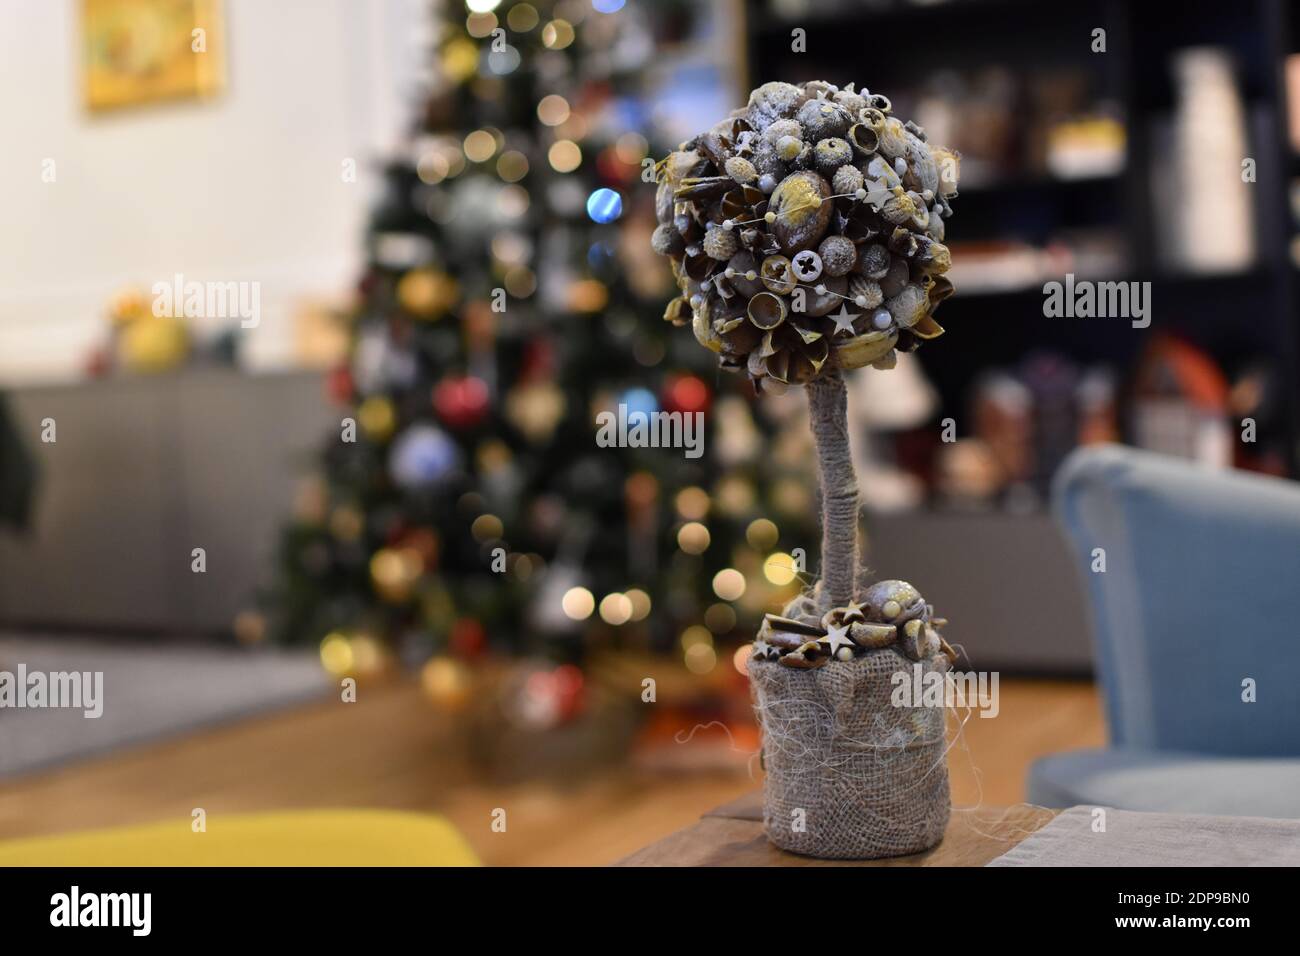 Weihnachten hausgemachte Dekoration auf einem festlichen Tisch mit beleuchtet Baum im Hintergrund Stockfoto